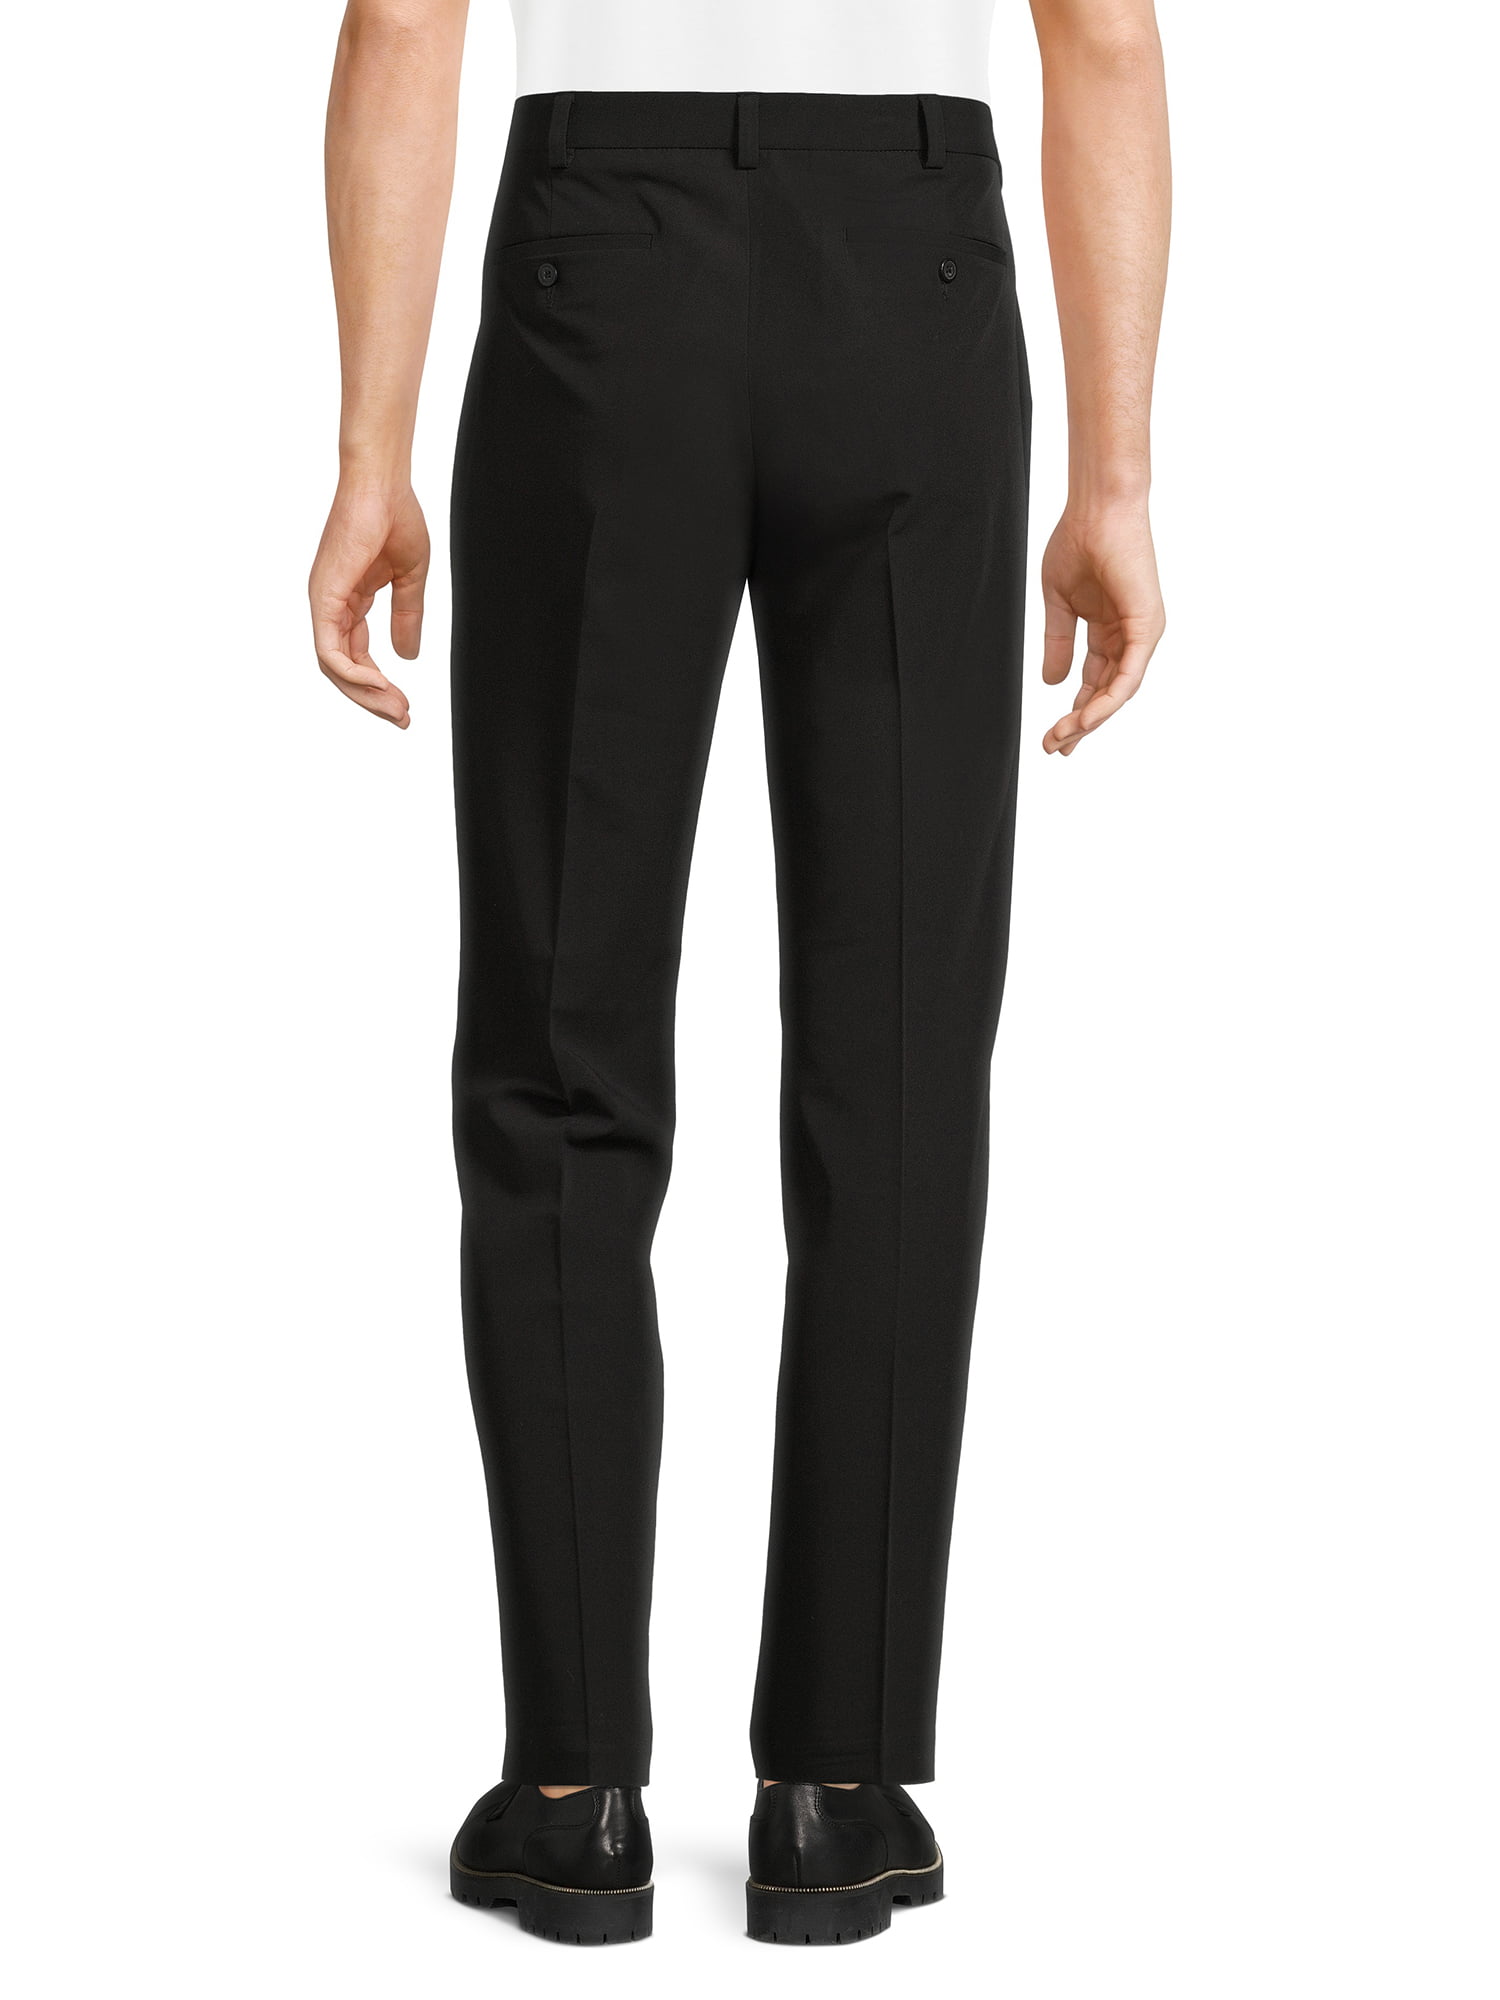 Men Plus Size Dress Pants Black Gray Business Suit Pants Slim Fit Formal  for Men at Rs 2871.13, Men Fashion Shirt